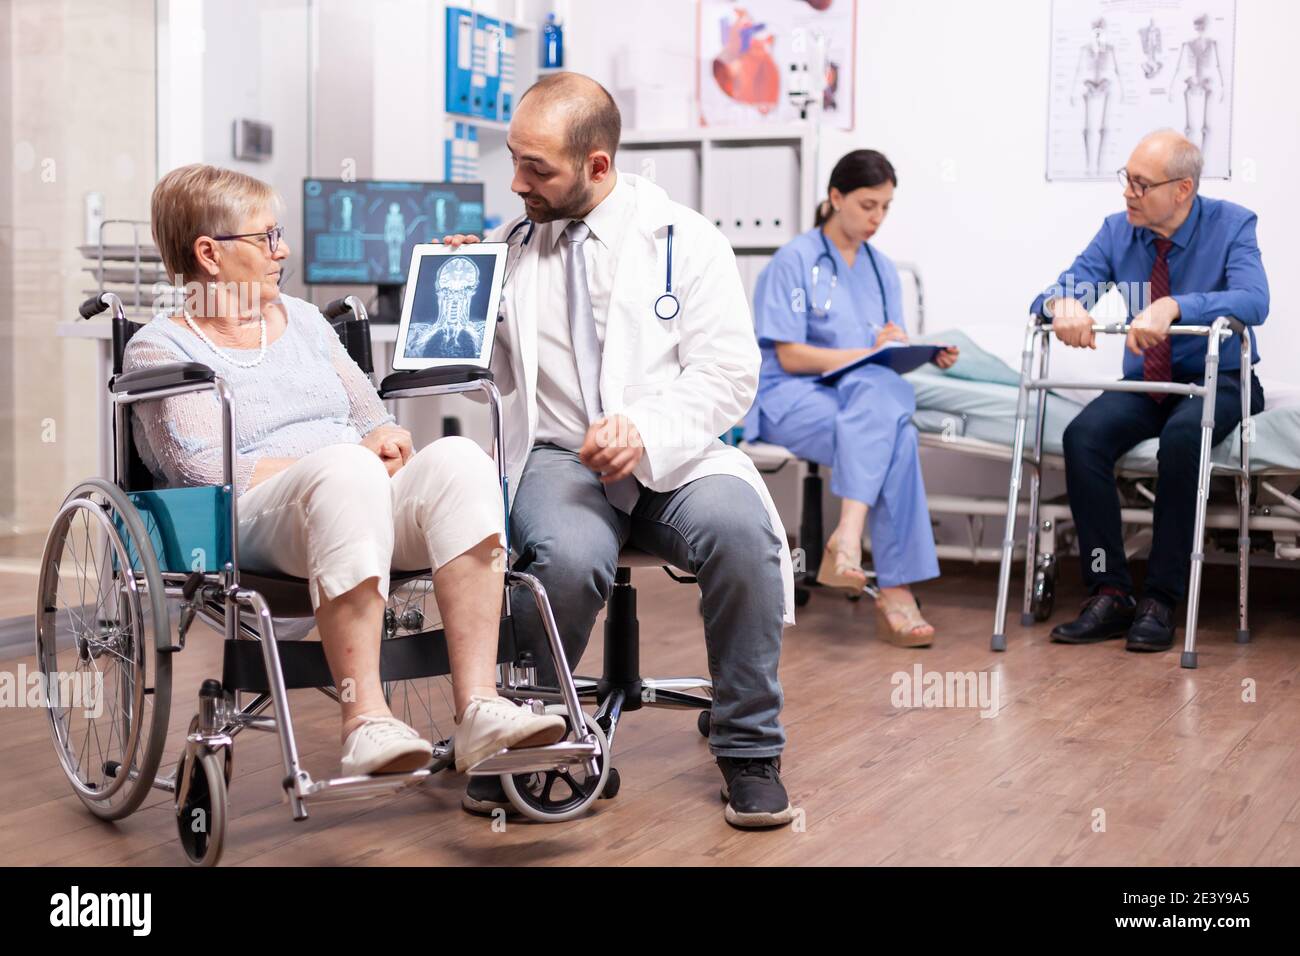 Behinderte ältere Frau mit Gehbehinderten sitzt im Rollstuhl und spricht mit dem Arzt über einen Tablet-pc. Mann mit Behinderungen, Gehrahmen sitzt im Krankenhausbett. Gesundheitssystem, Klinikpatienten. Stockfoto